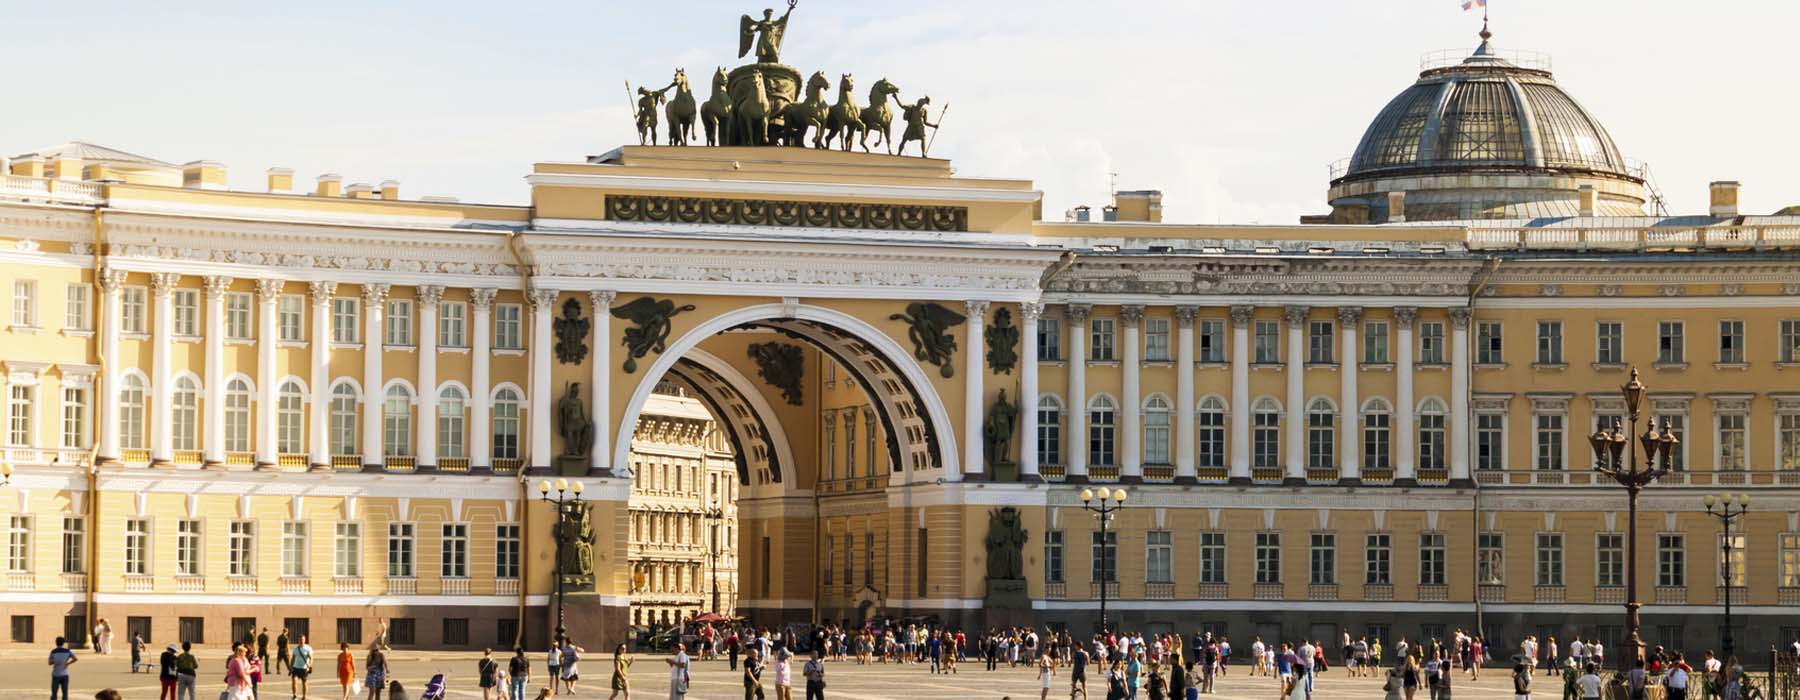 Saint Petersburg<br class="hidden-md hidden-lg" /> Holidays